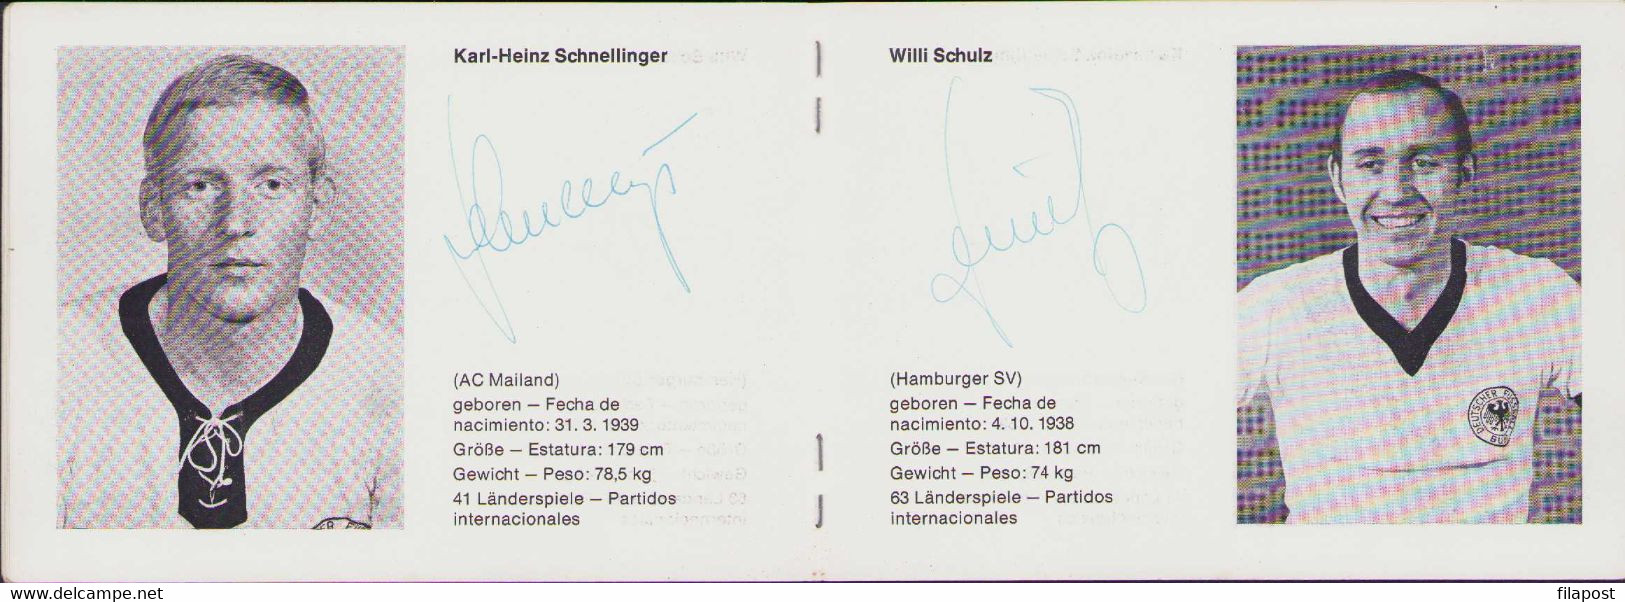 Mexico 70 World Cup German Football Team 1970 Gerd Muller & whole Deutscher Fußball-Bund originals autographs, no print!